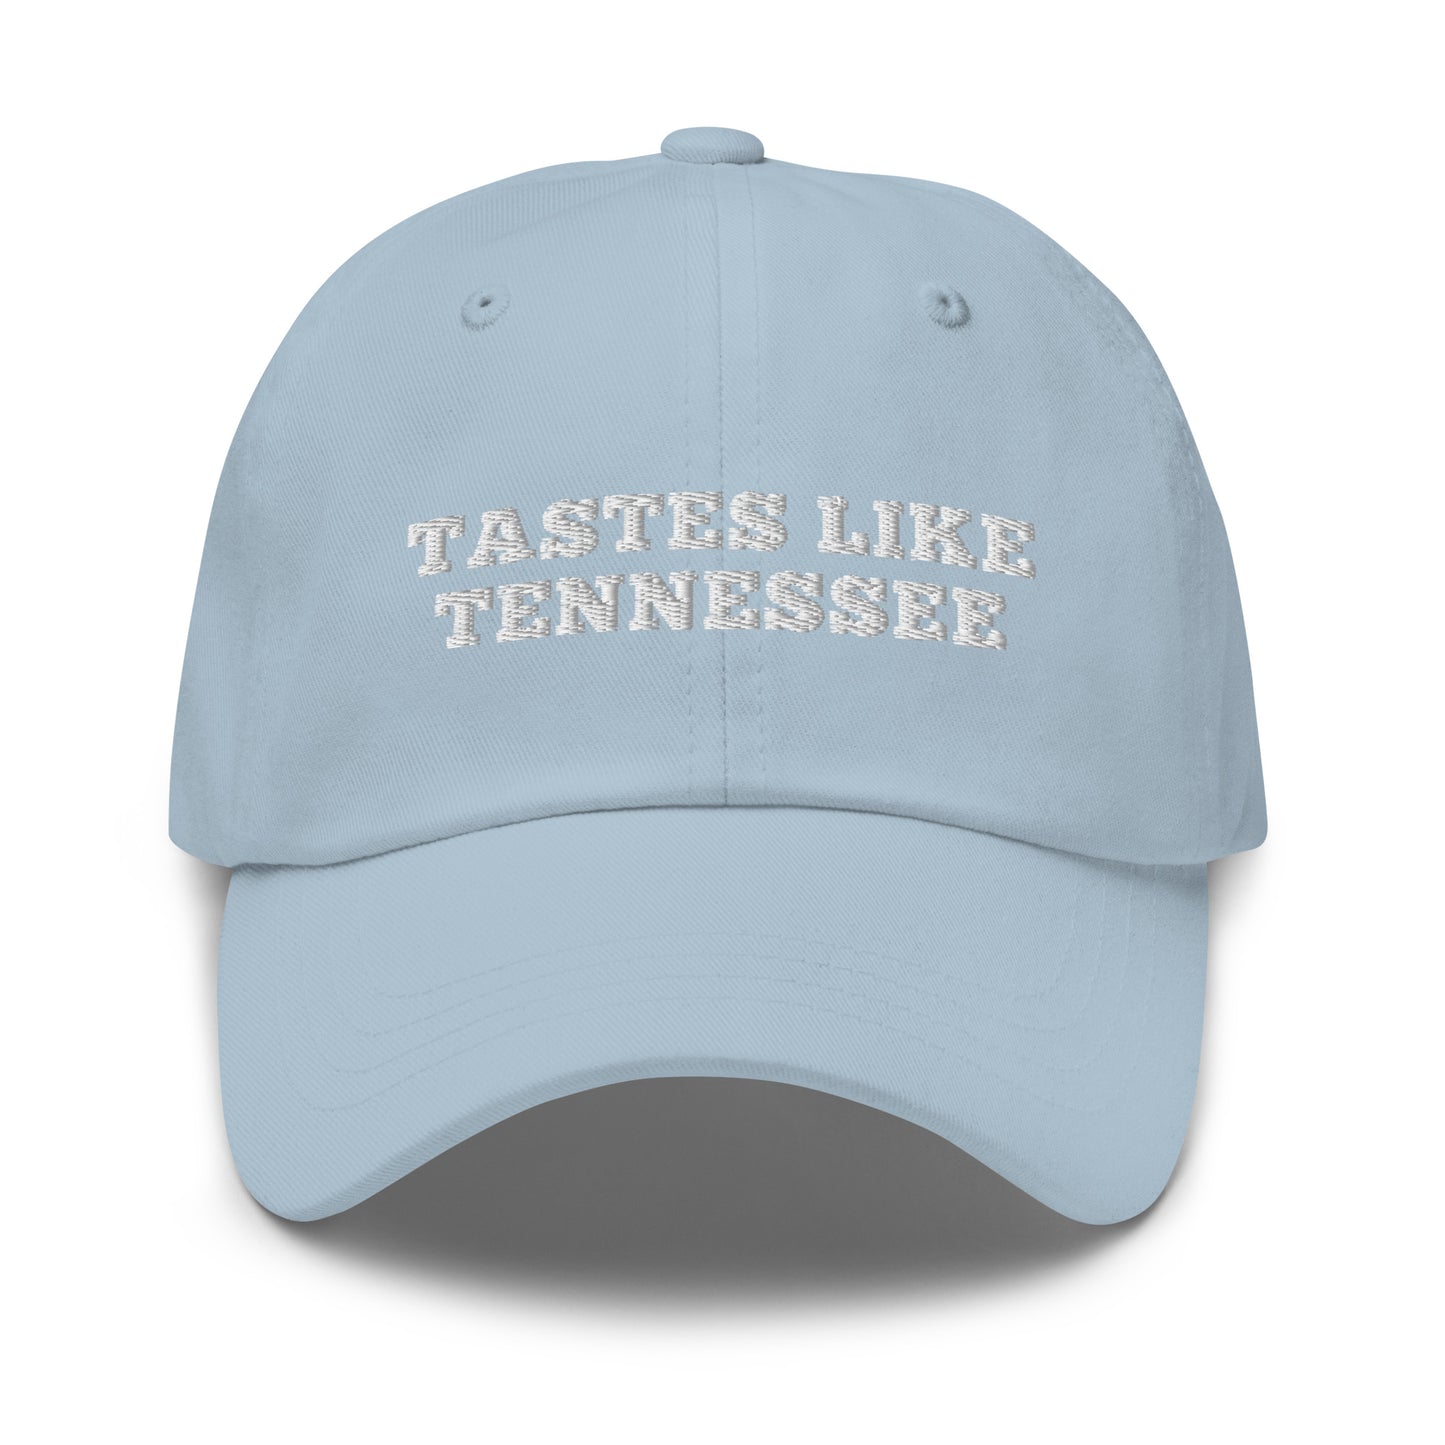 Tastes Like Tennessee Hat / Tastes Like Tennessee Dad hat